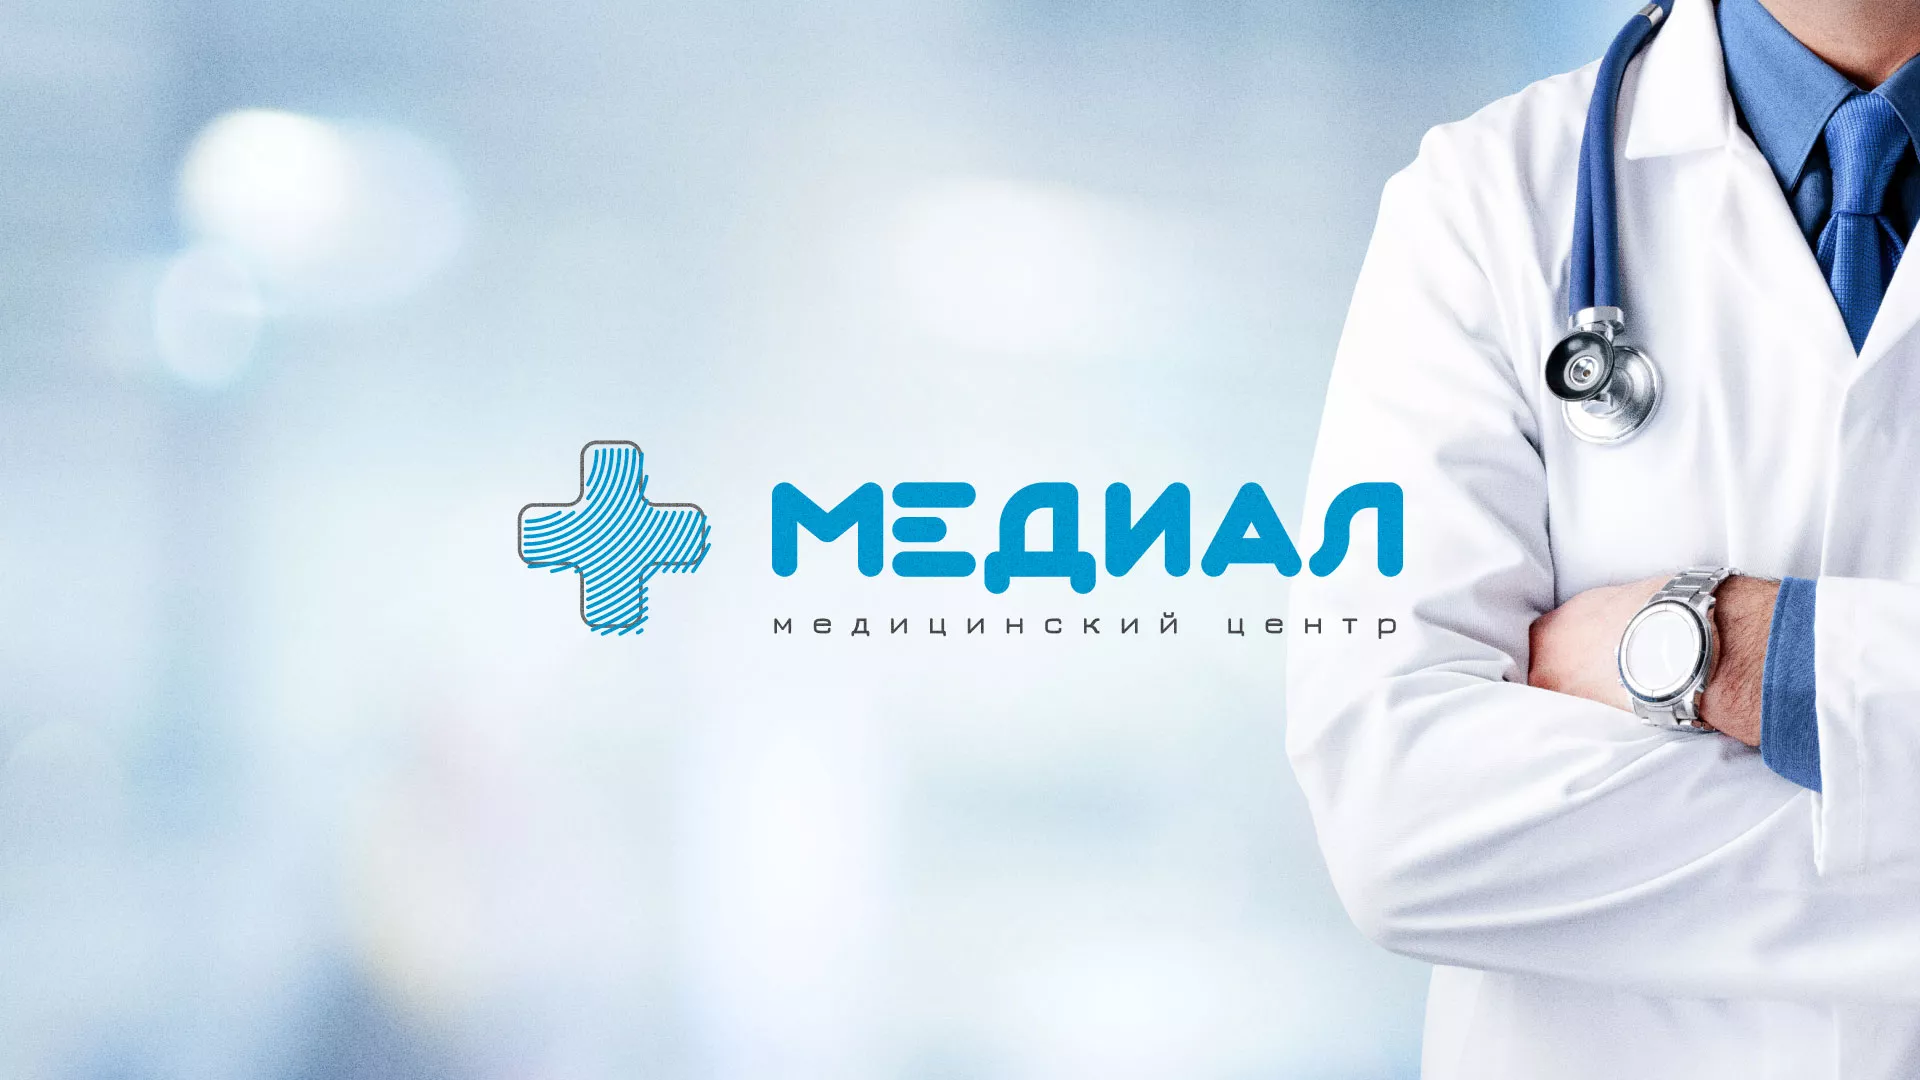 Создание сайта для медицинского центра «Медиал» в Ликино-Дулево